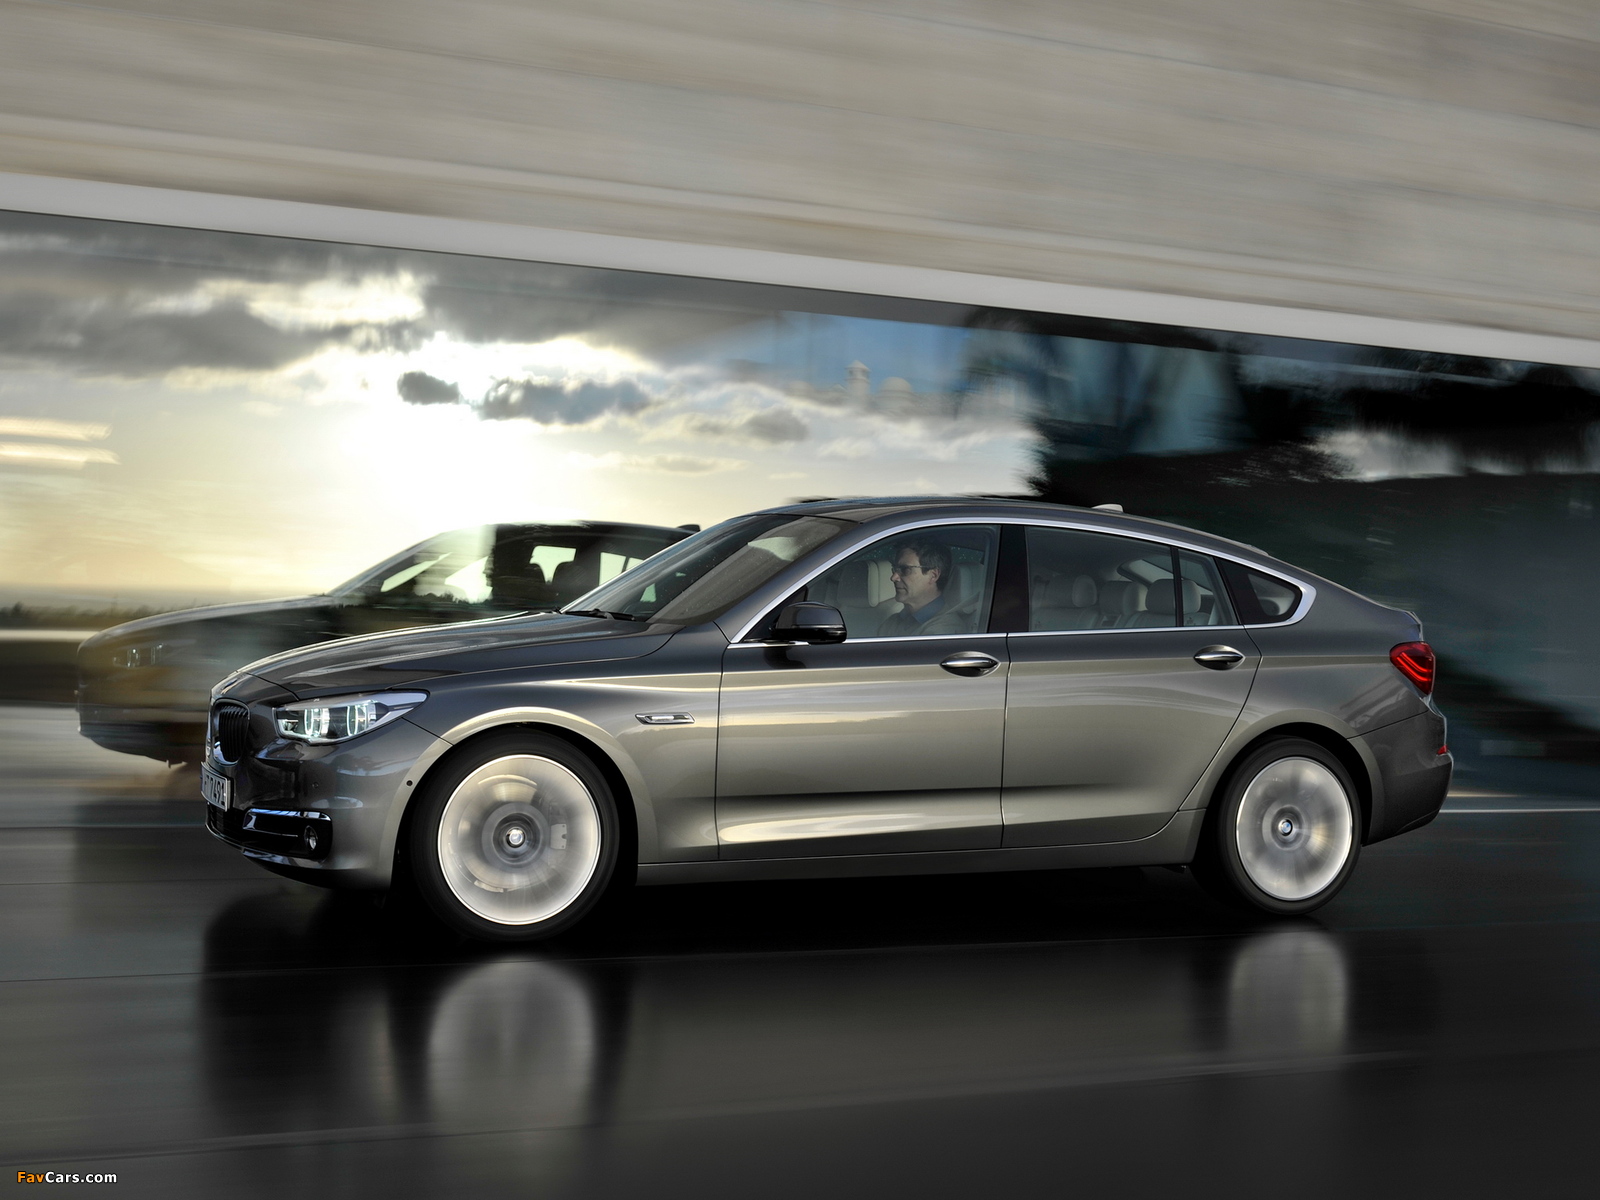 BMW 535i xDrive Gran Turismo Luxury Line (F07) 2013 photos (1600 x 1200)